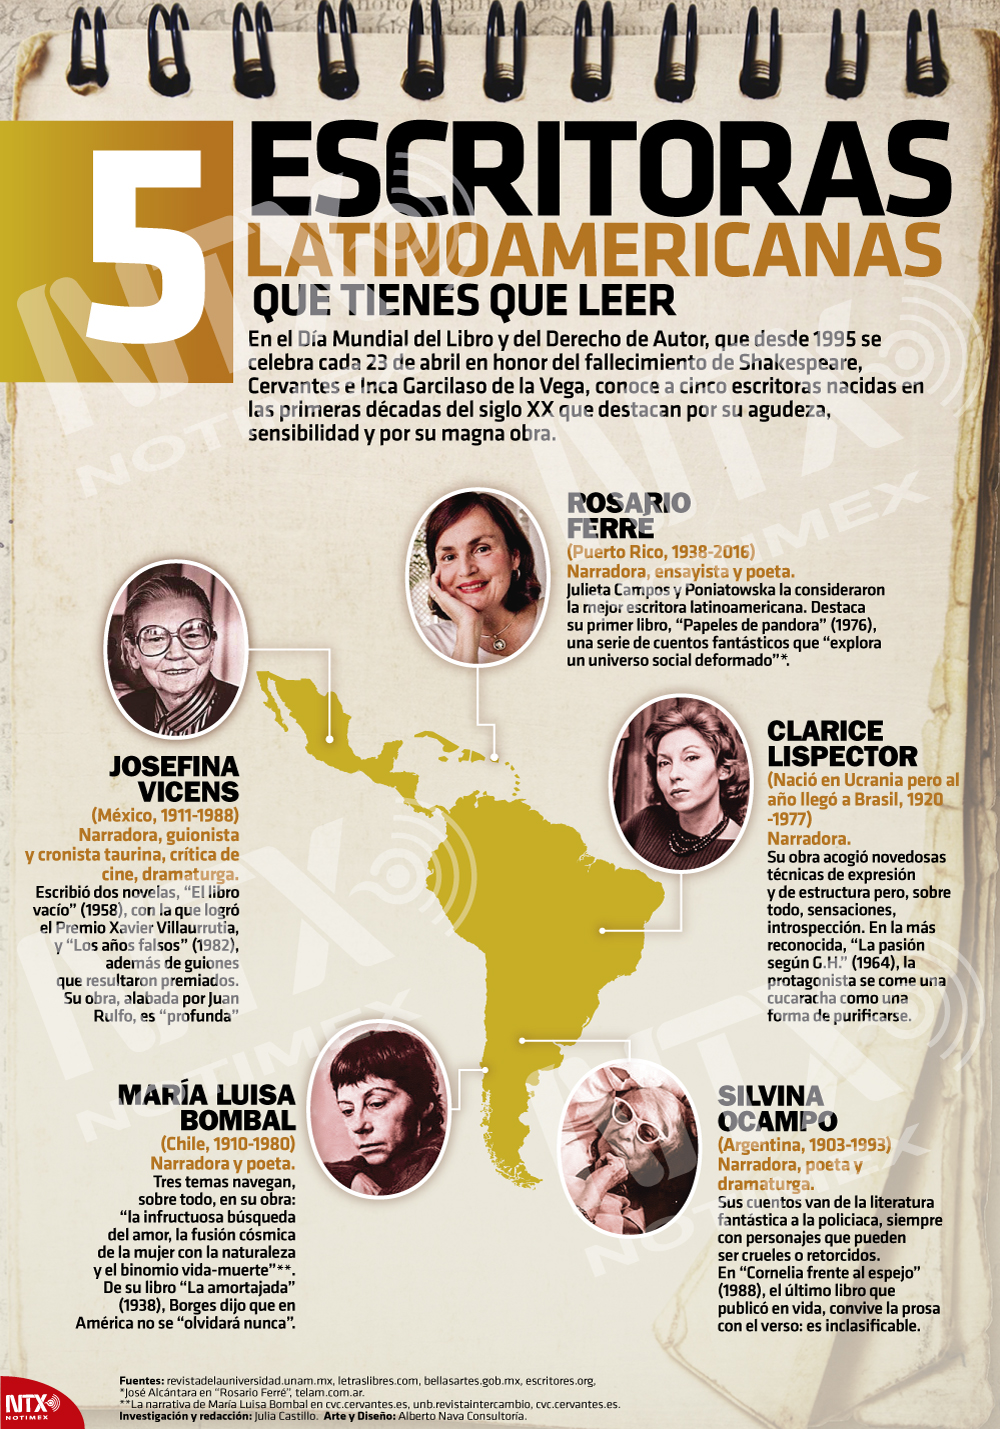 5 Escritoras latinoamericanas que tienes que leer